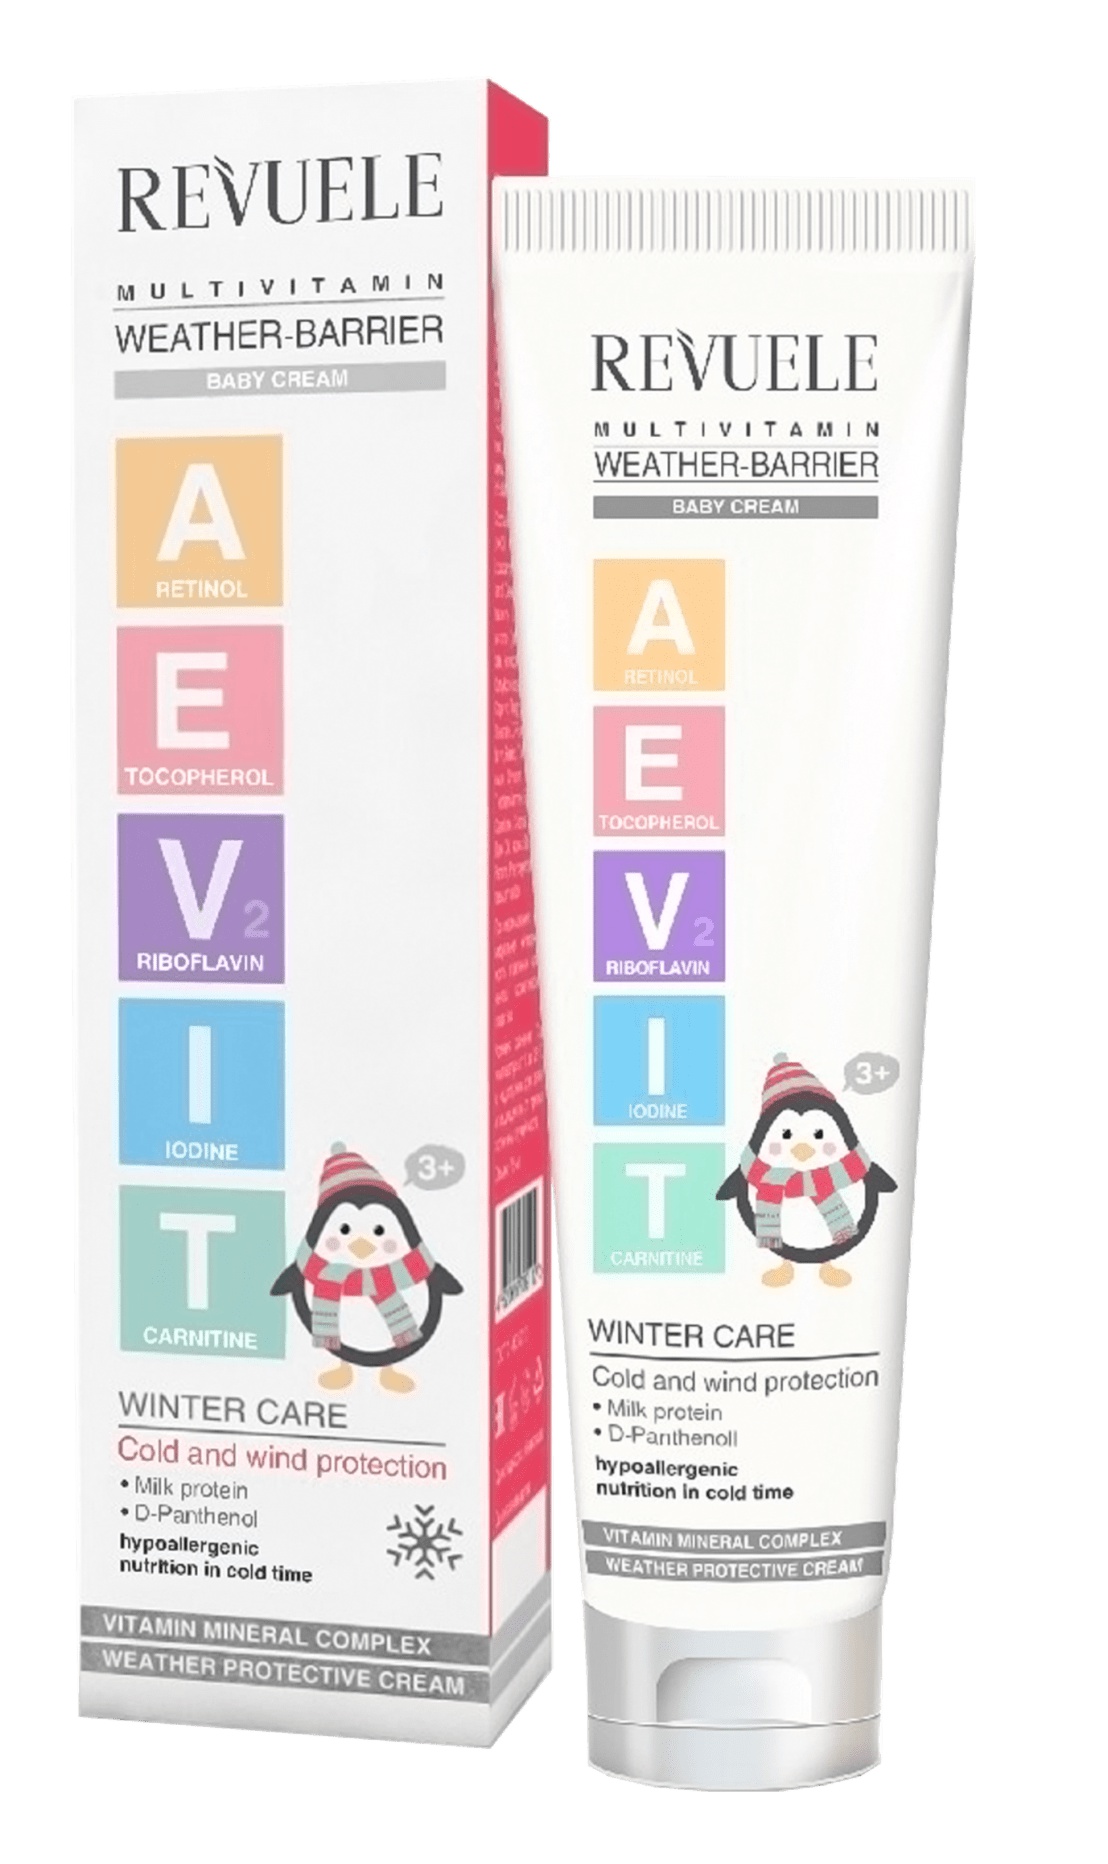 Revuele AEVIT Multivitamin Weather-Barrier Baby Cream